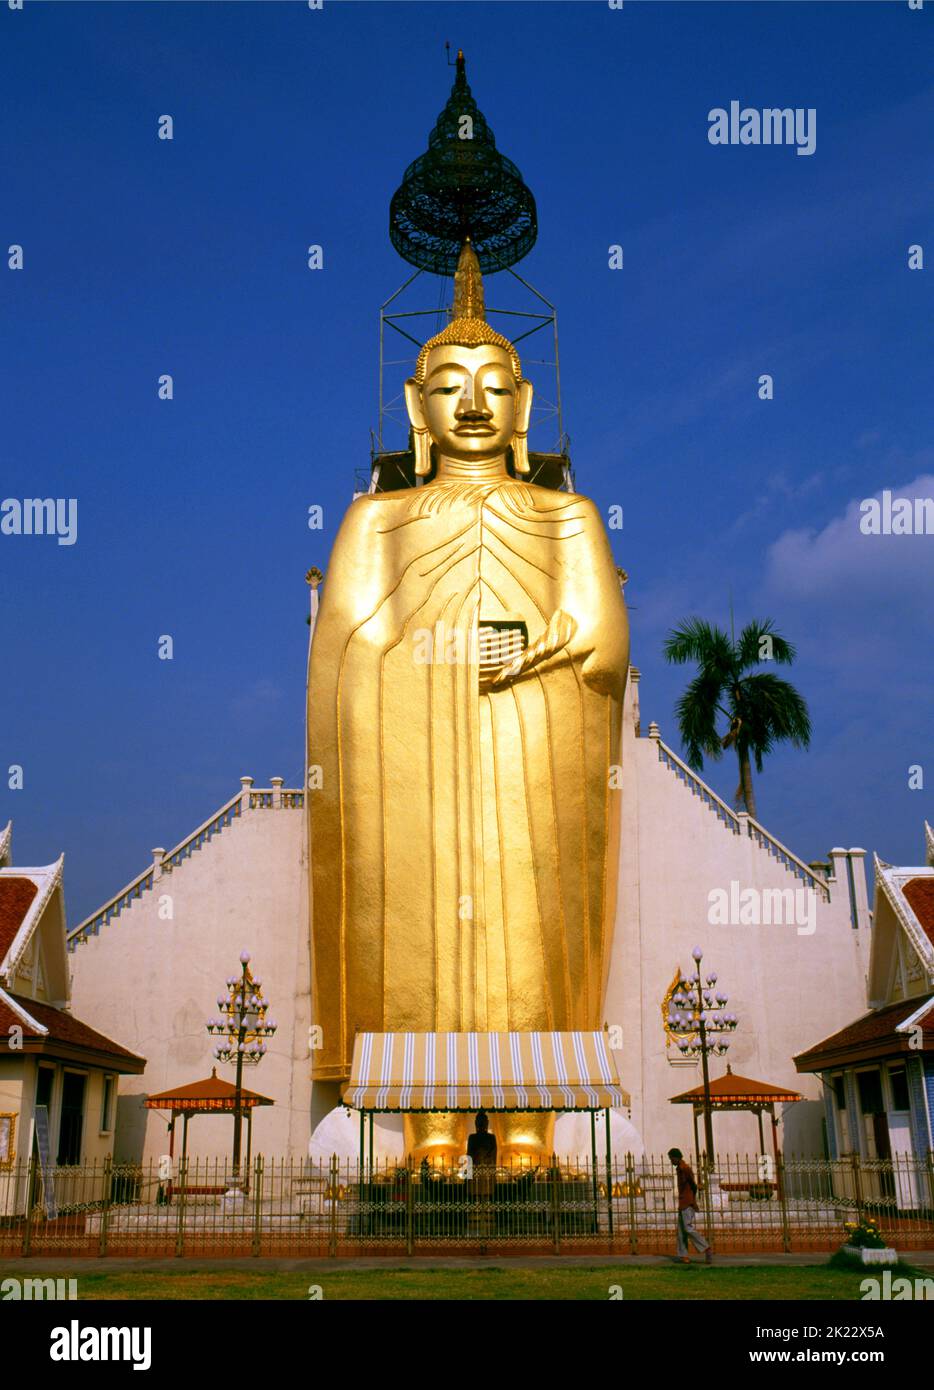 Tailandia: Buda gigante de pie, Wat Intharawihan, Bangkok. La característica principal del Wat Intharawihan de Bangkok es el Buda de 32 metros de altura llamado Luang Pho o Phrasiariyametri. Tomó más de 60 años para completarse y está decorado con mosaicos de vidrio y oro de 24 quilates. El nudo superior de la imagen de Buda contiene una reliquia del Señor Buda traída de Sri Lanka. El templo fue construido a principios del período Ayutthaya. Foto de stock